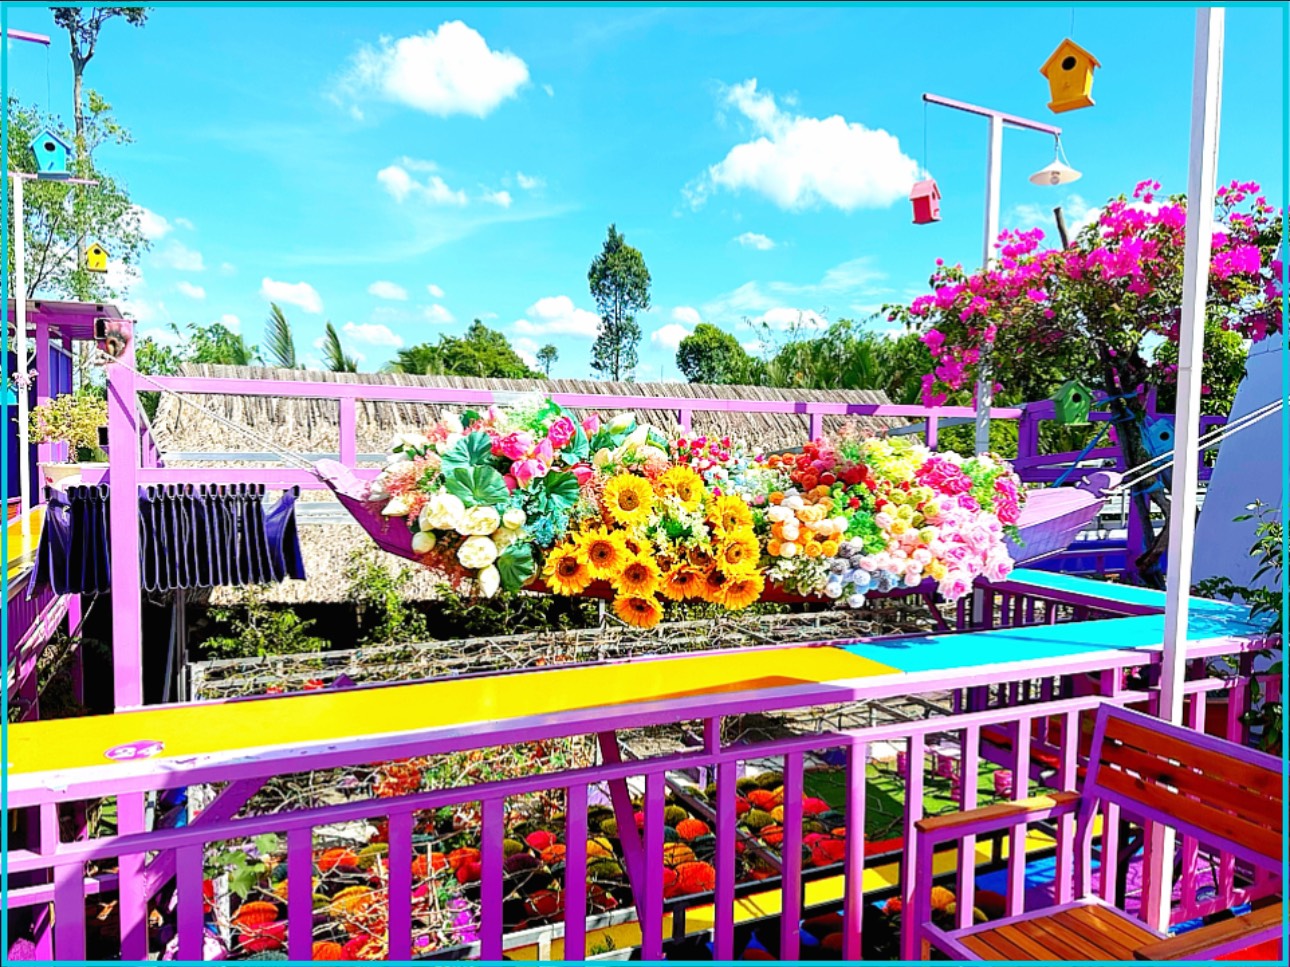 Hình ảnh khu vườn màu tím